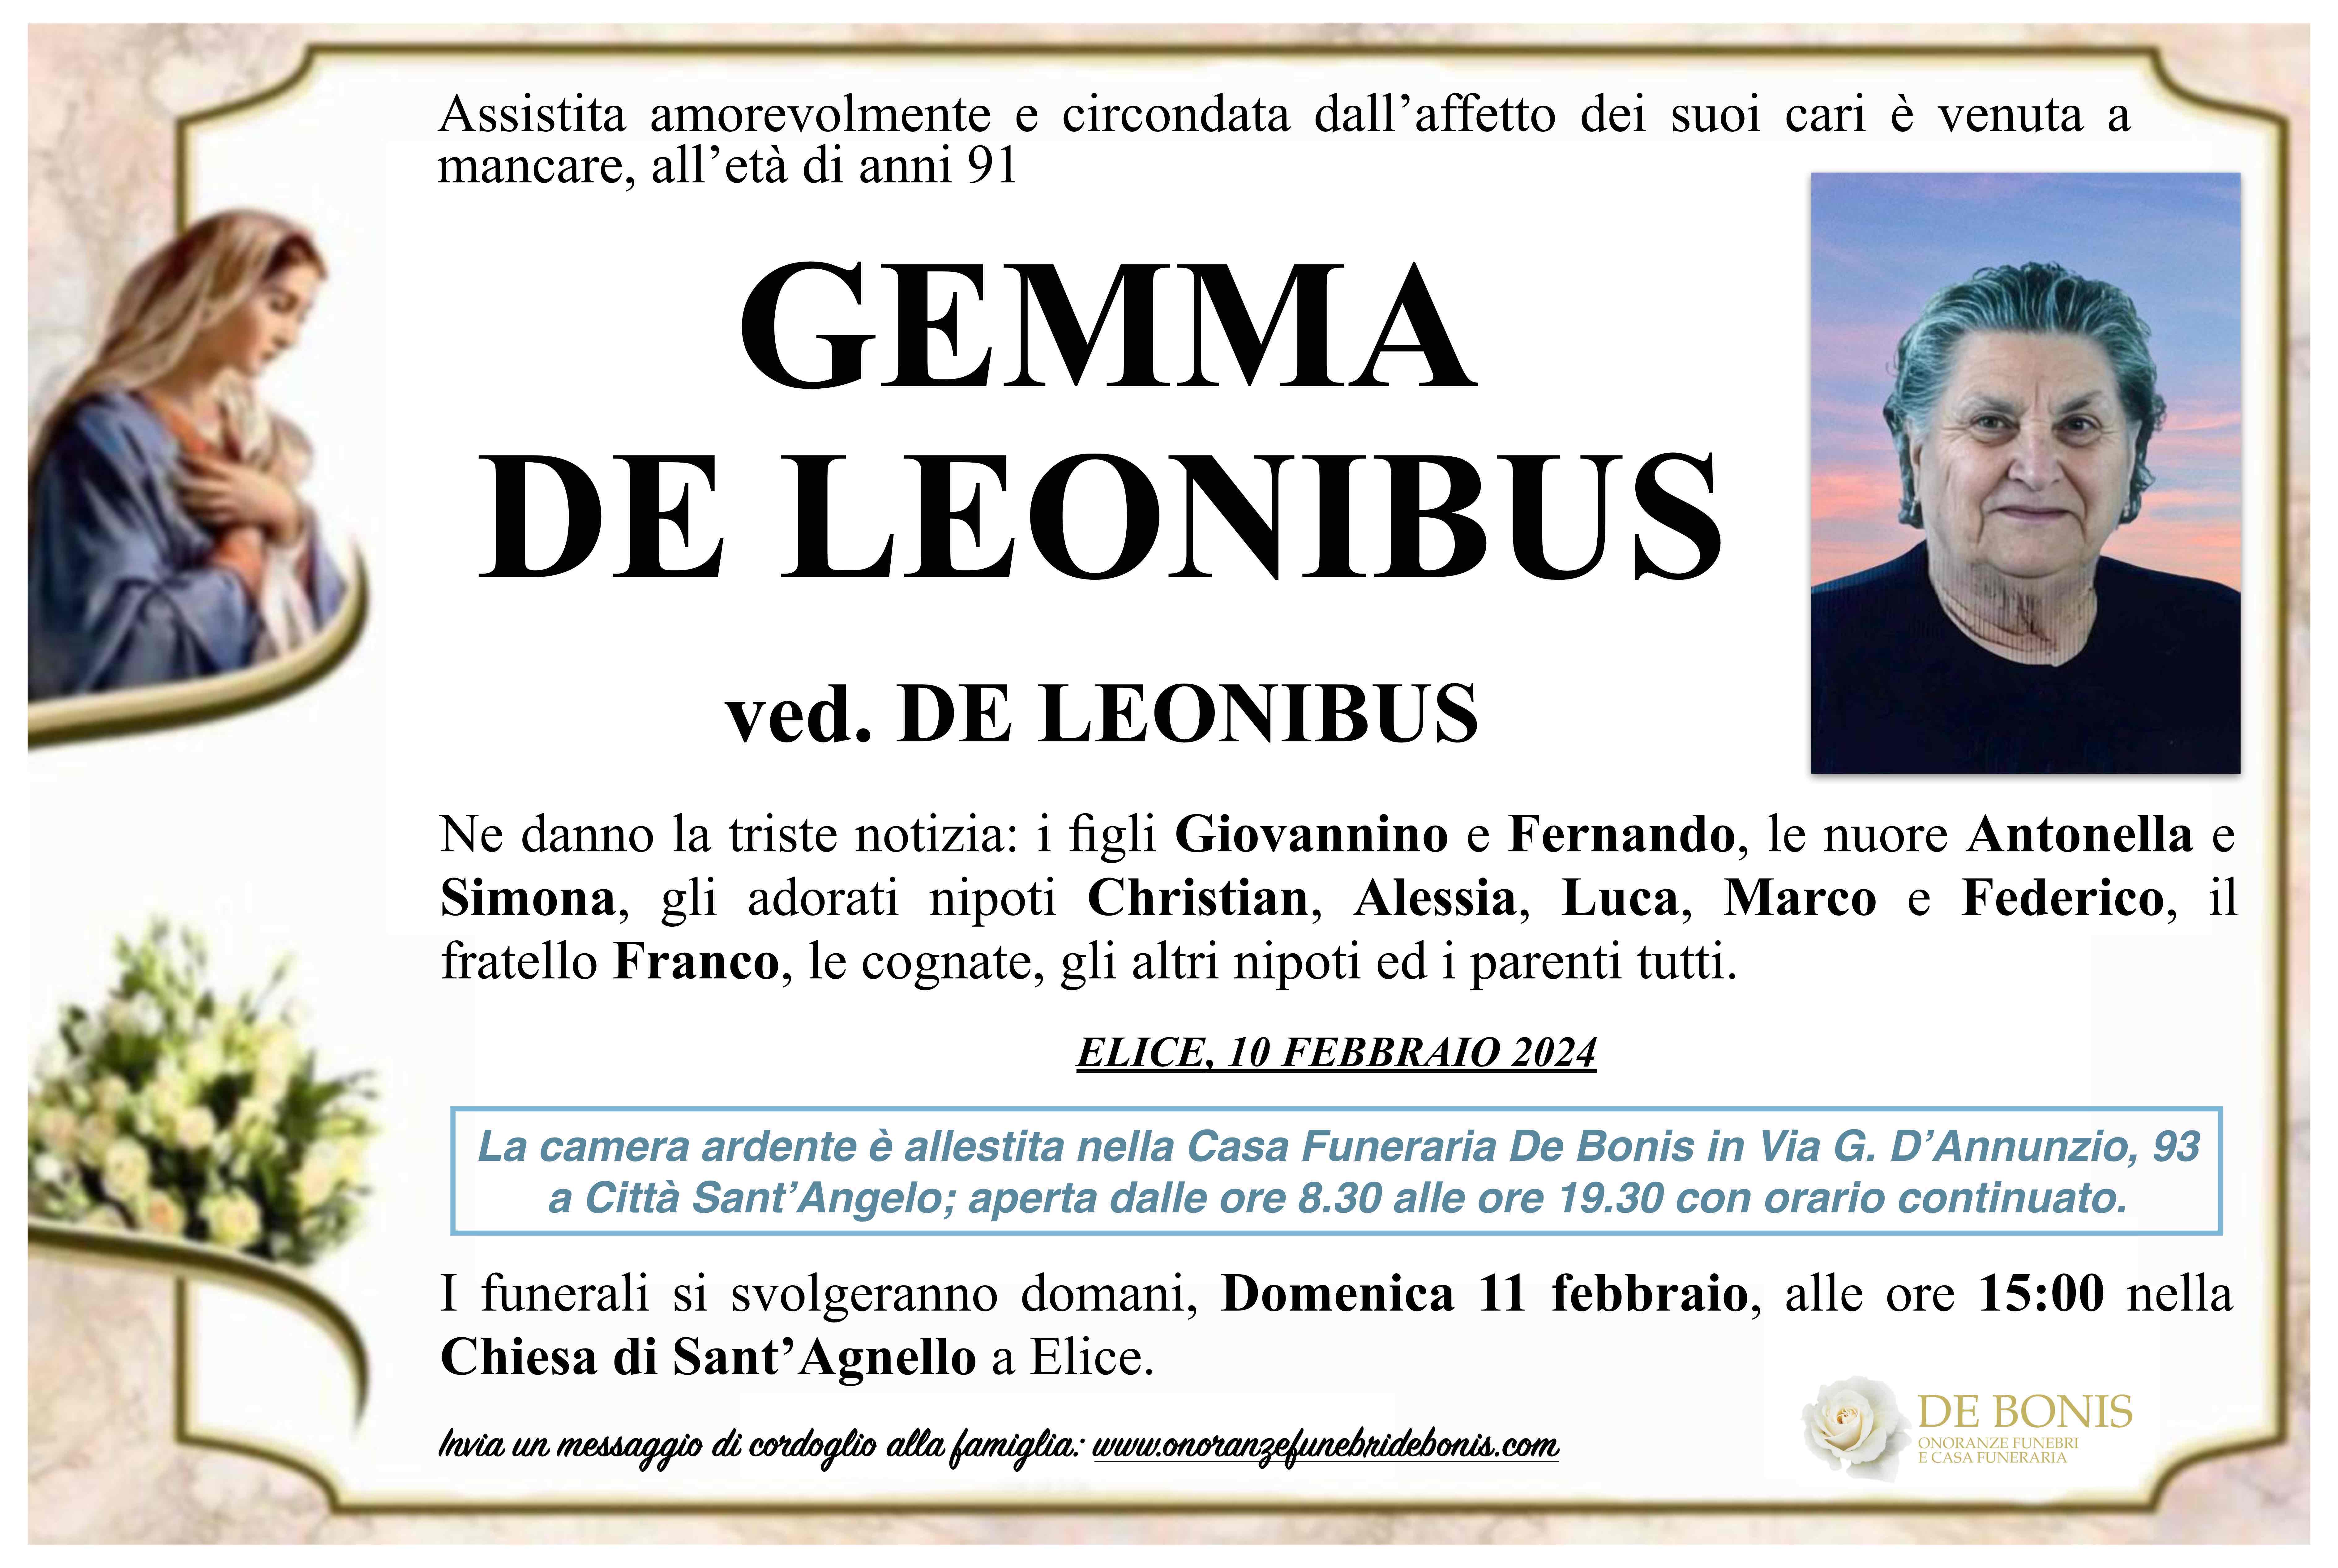 Gemma De Leonibus